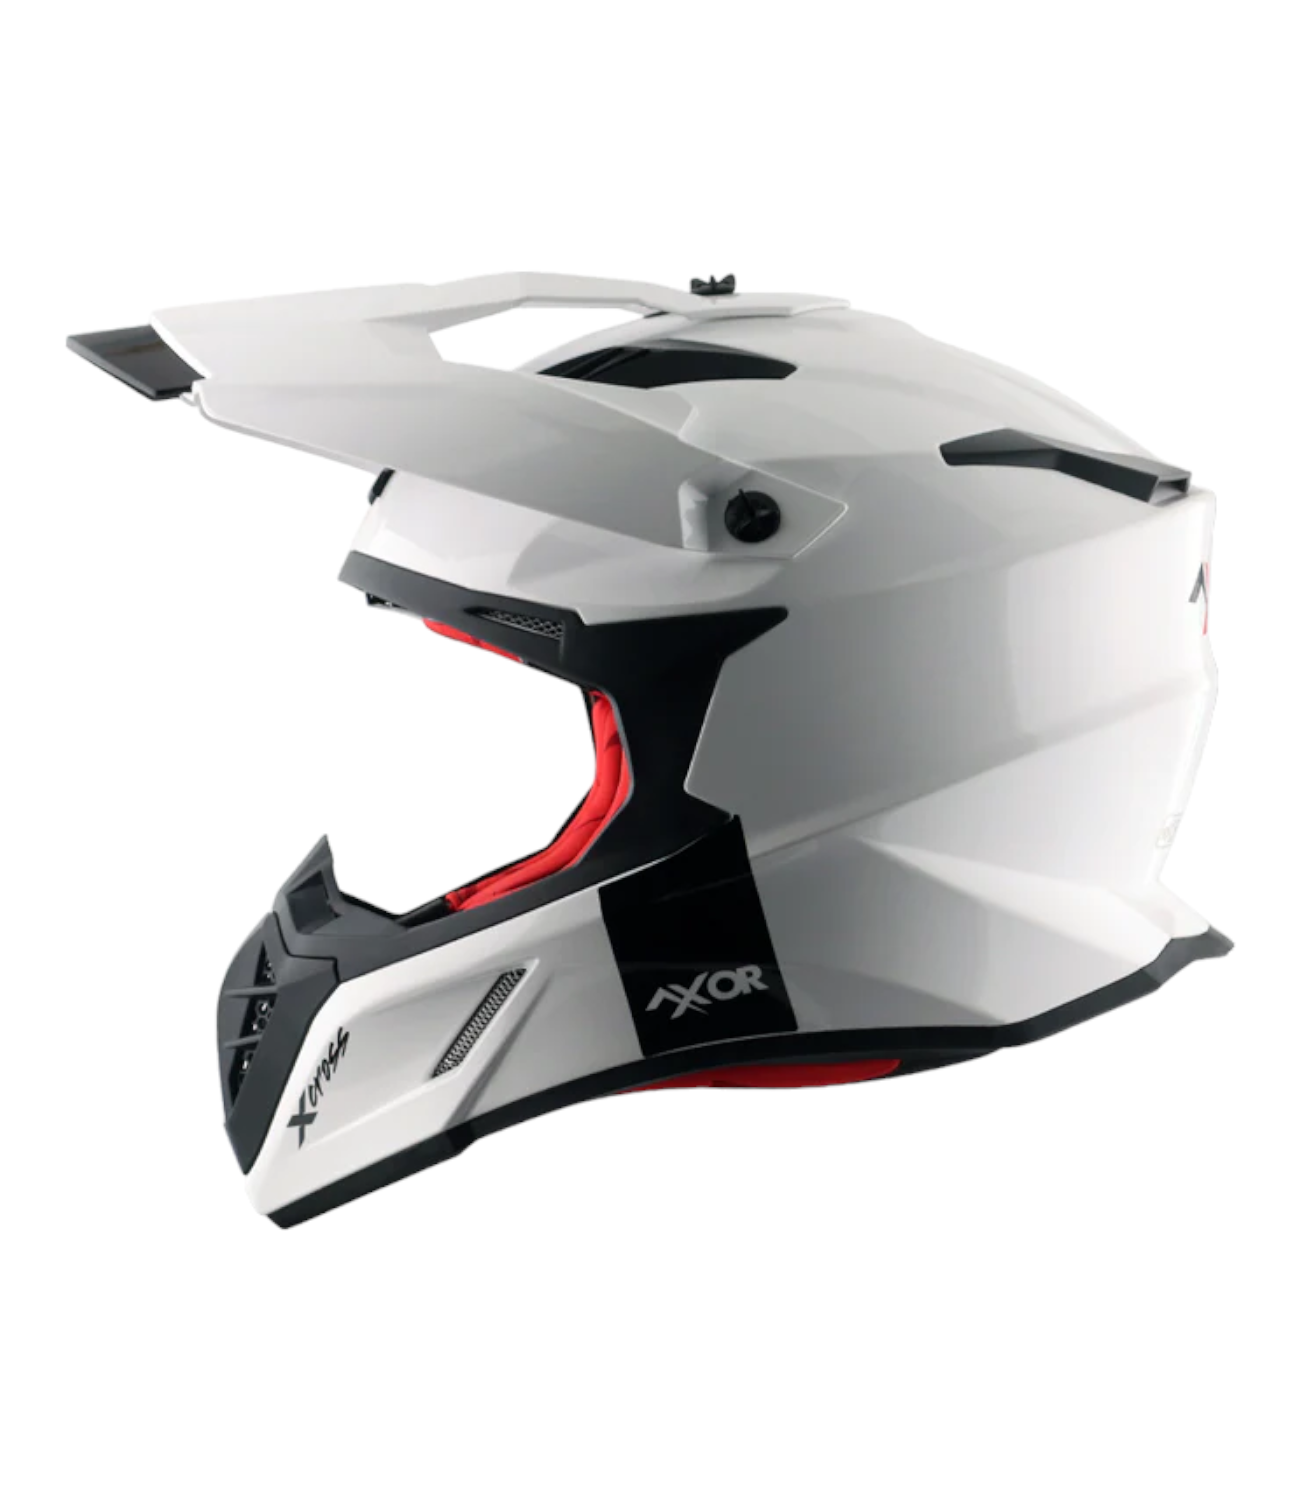 Axor X-Cross Single Color Helmet White